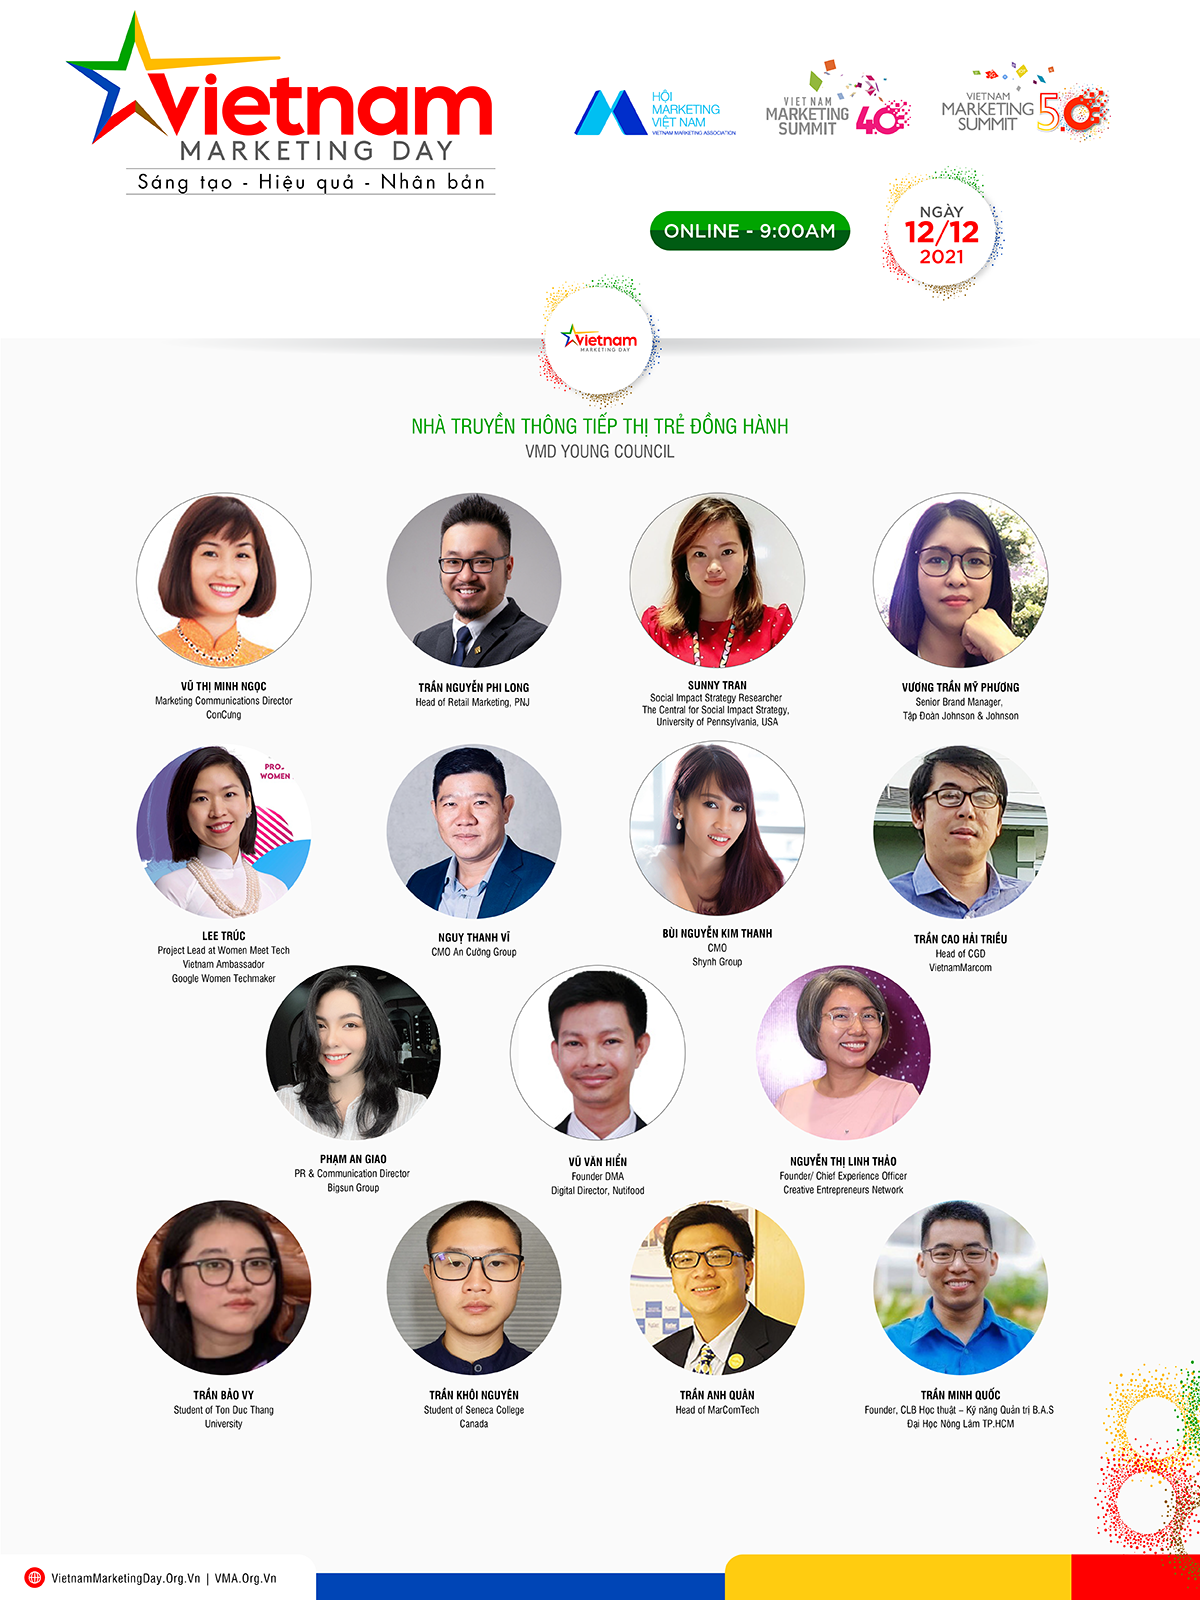 Kinh doanh - Vietnam Marketing Day - Nơi hội tụ các giá trị “Sáng tạo - Hiệu quả - Nhân bản” (Hình 3).